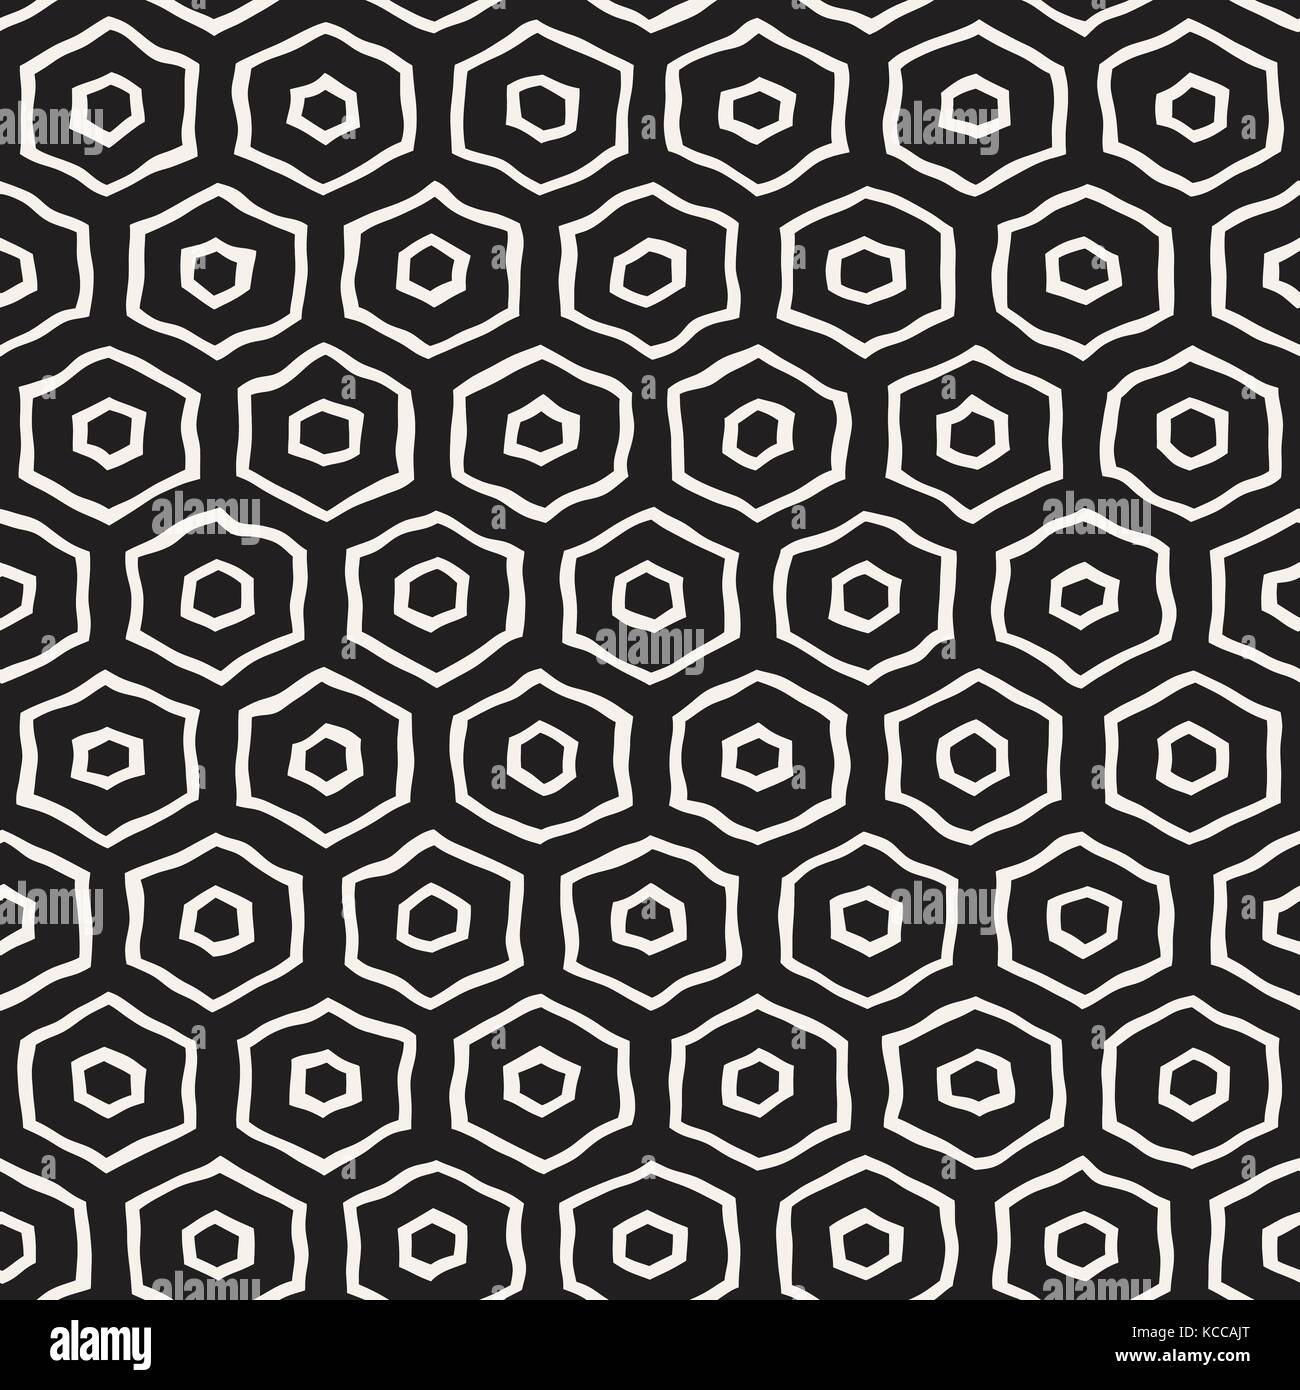 Un motif en noir et blanc avec treillis hexagonal. creative dessinés à la main, fond noir en nid. Illustration de Vecteur